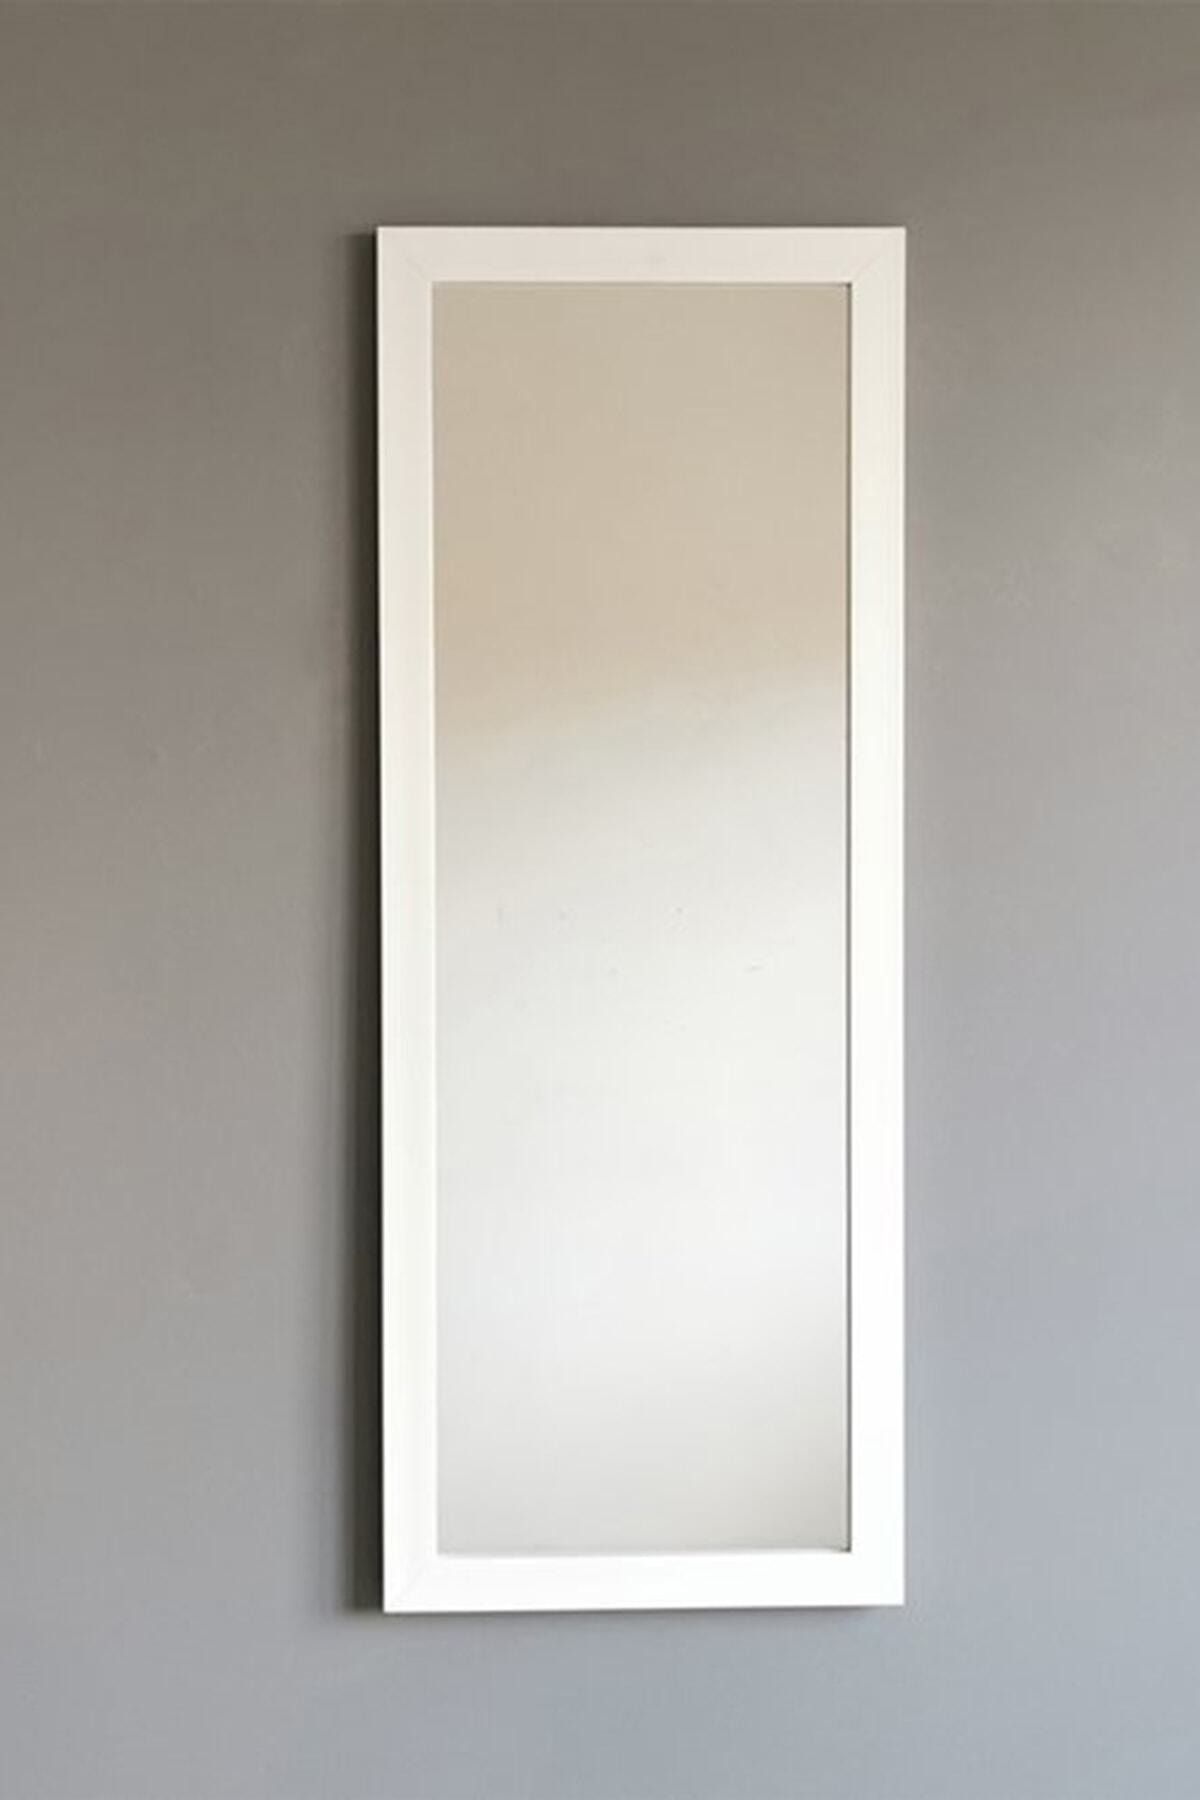 Vivense Beyaz Çerçeveli Dekoratif Boy Aynası